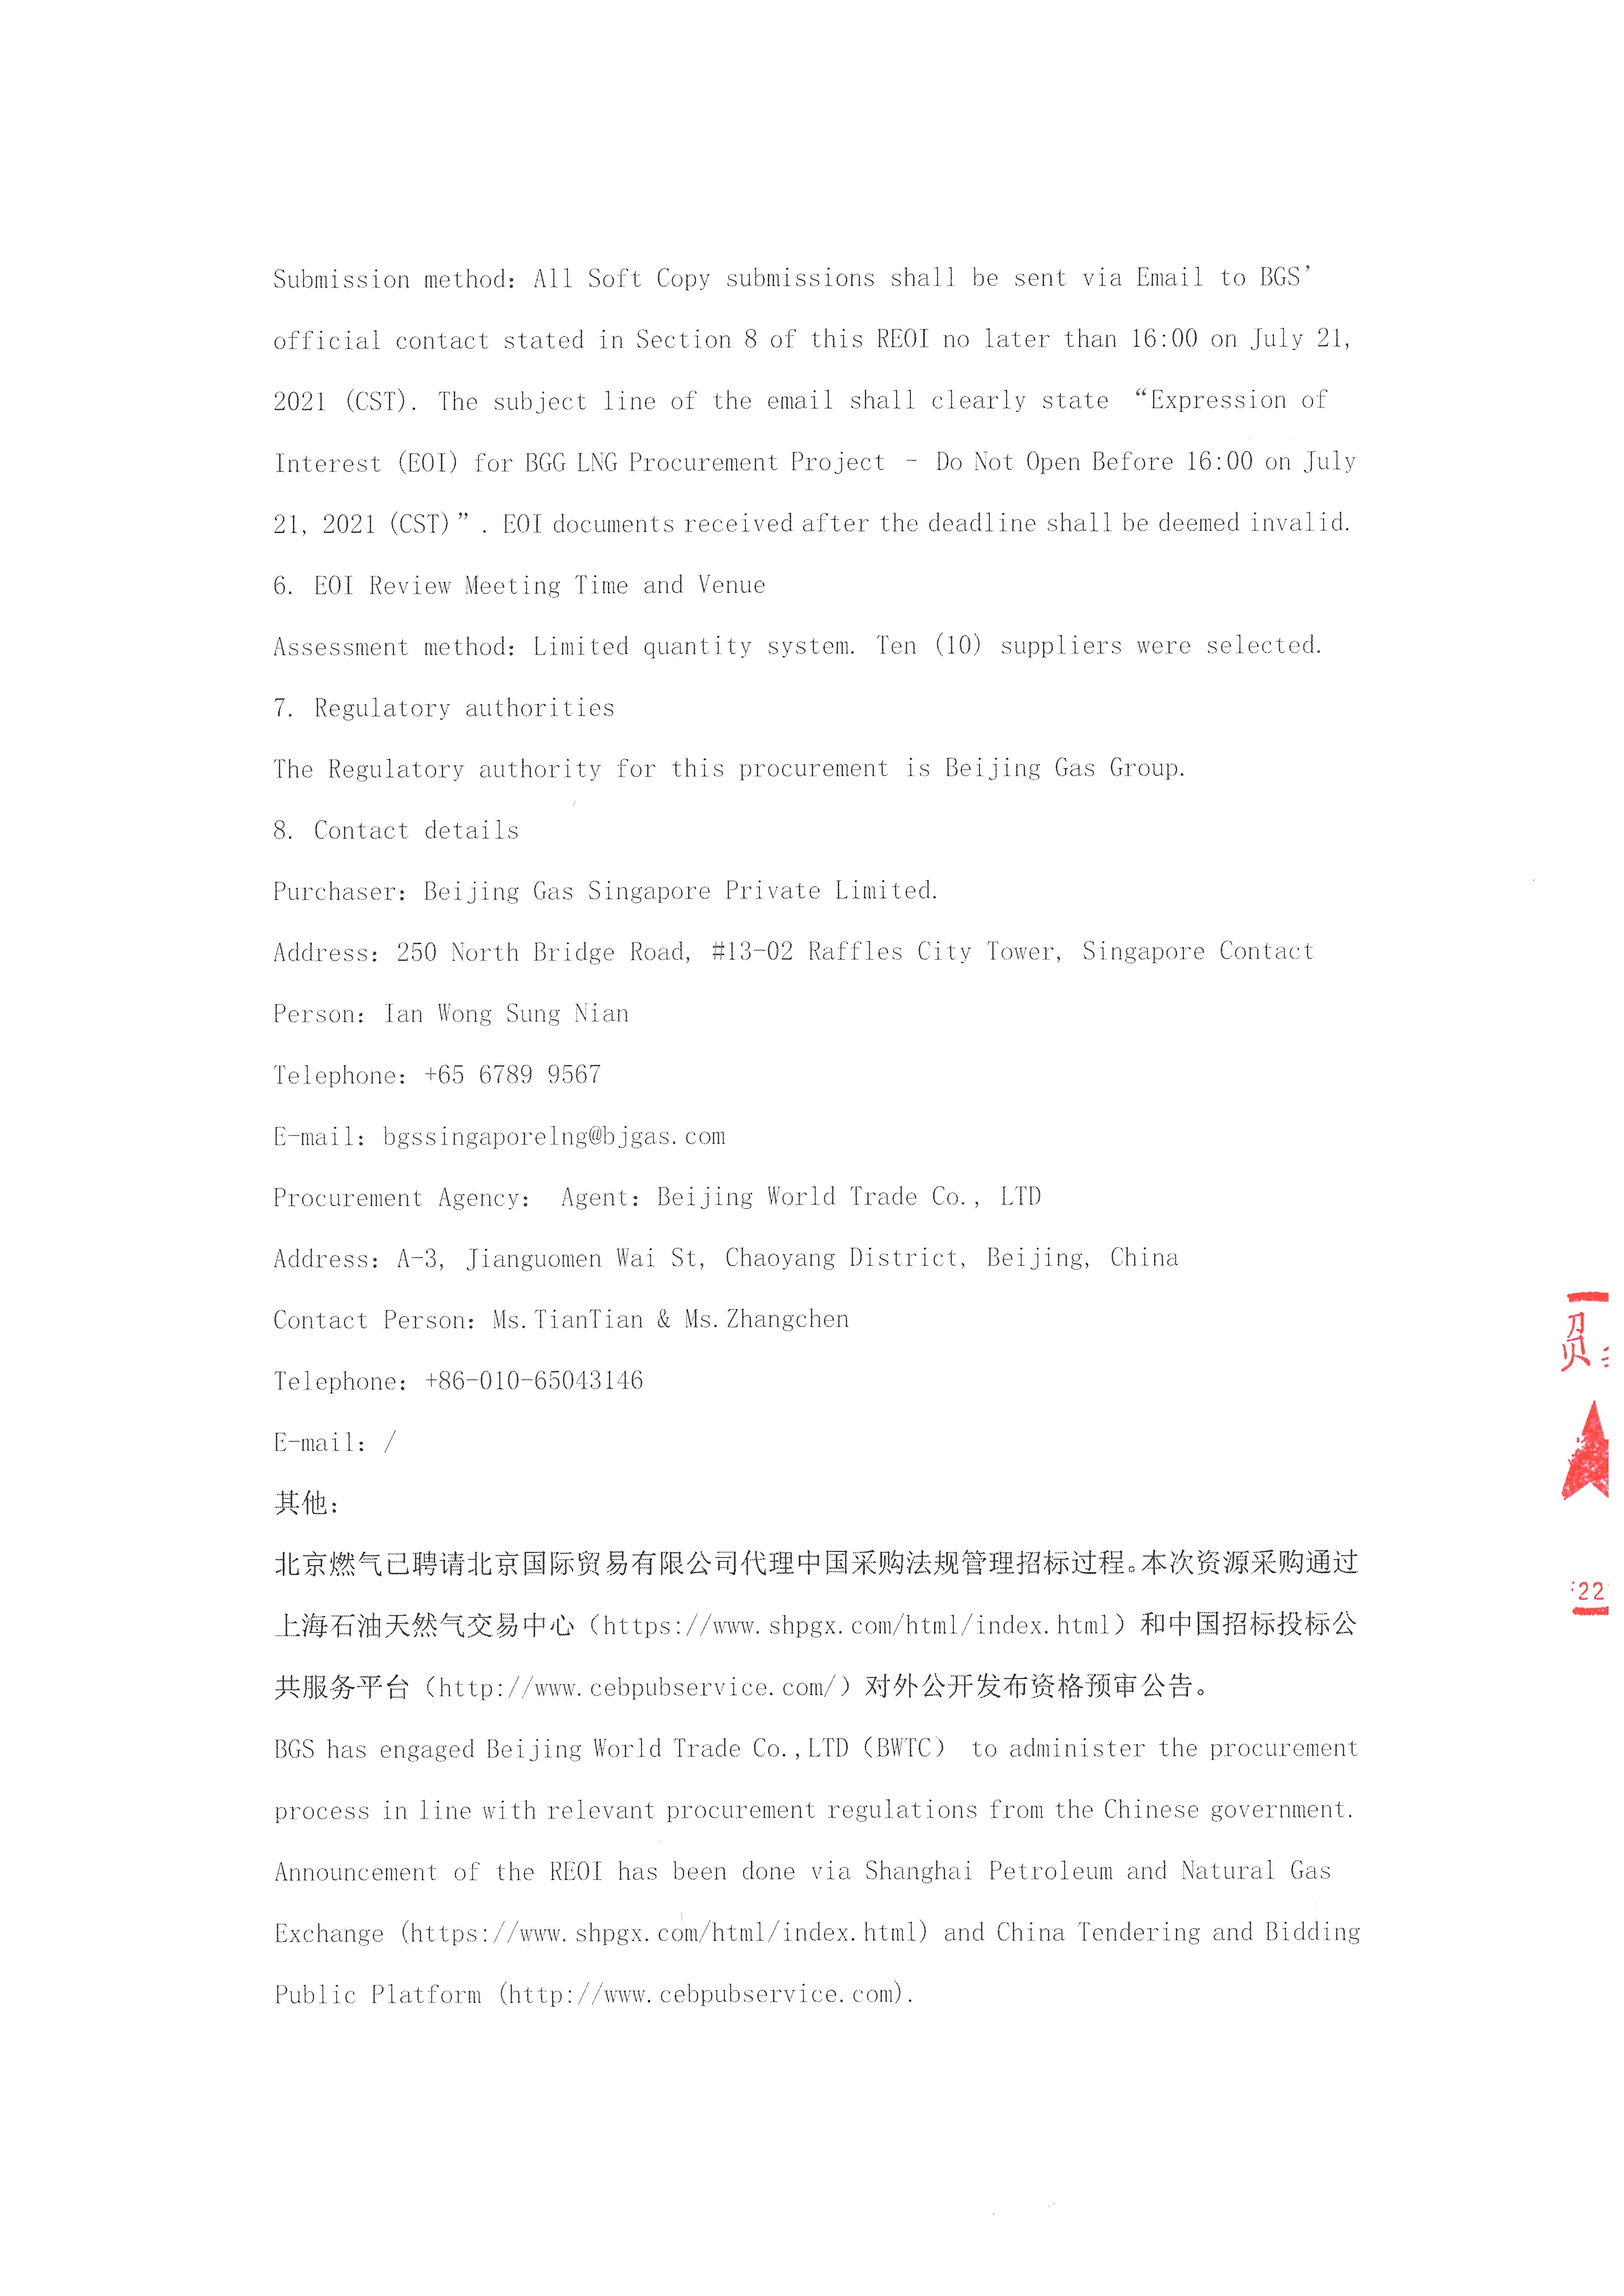 盖章-北京燃气2023-2032年LNG国际资源采购项目资格预审公告(1)_页面_3.png